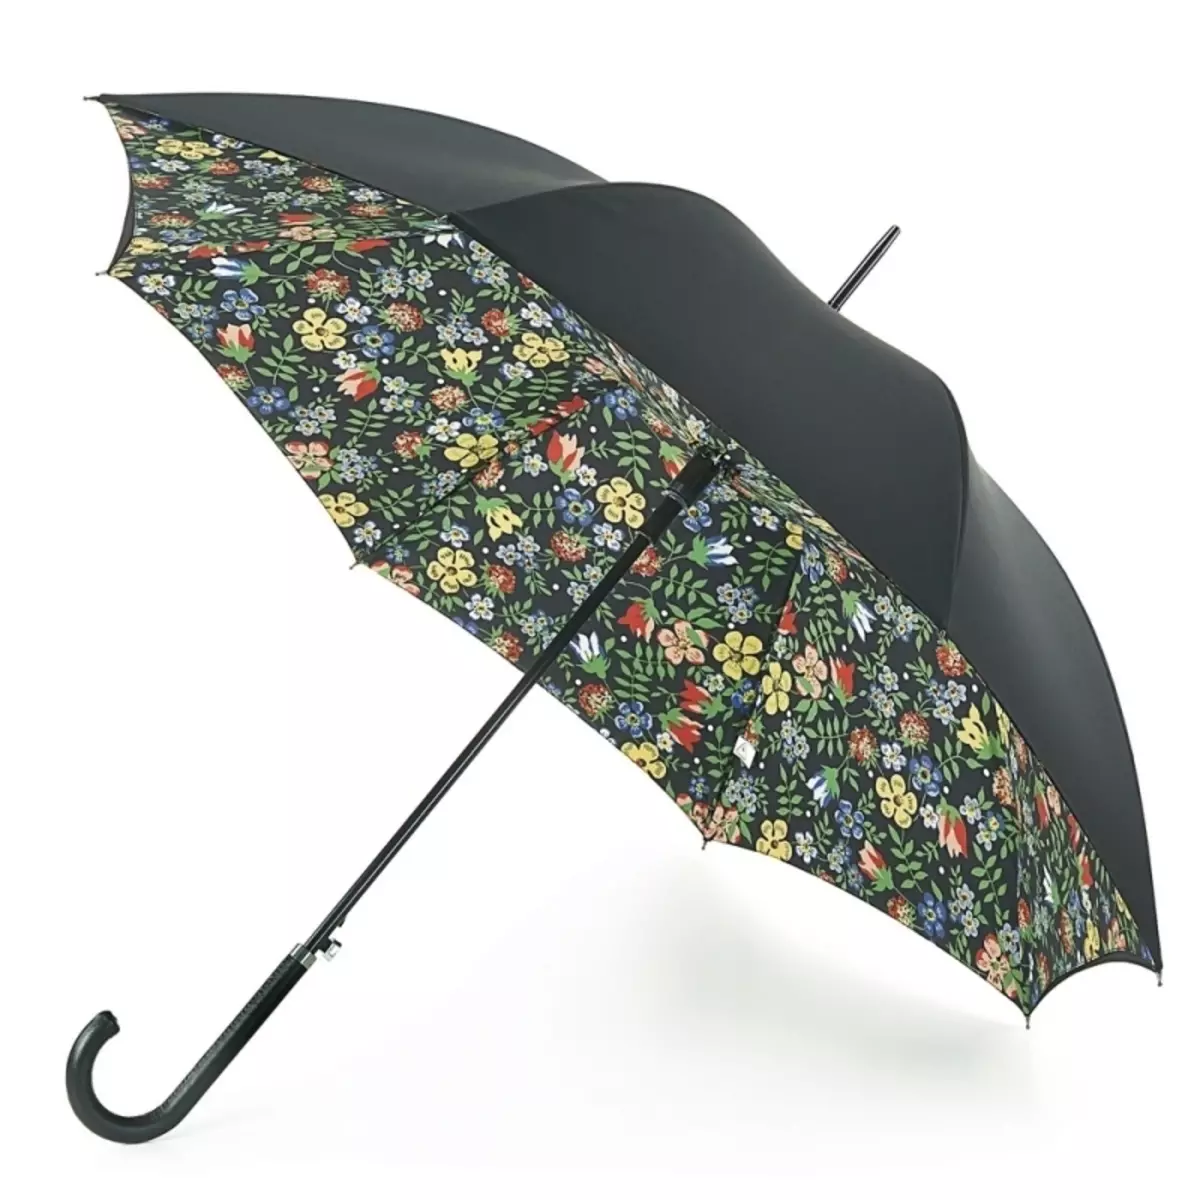 Fulton Umbrellas (53 fotos): skaaimerken fan modellen en resinsjes oer Umbrellas 15229_41